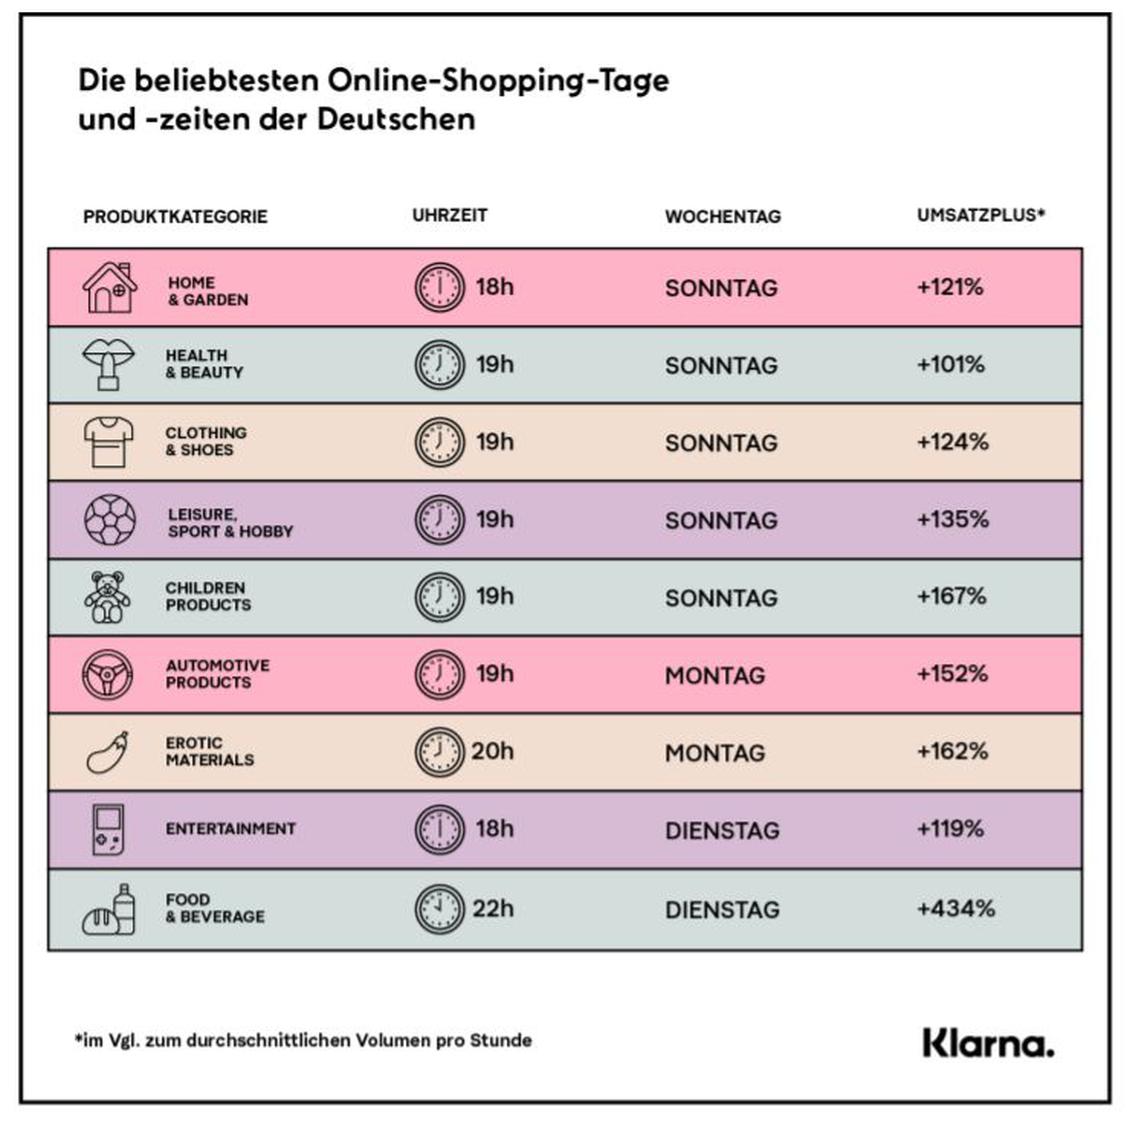 Erotikprodukte werden bevorzugt Montagabend gekauft. , (Grafik: Die beliebtesten Online-Shopping-Tage und Zeiten der Deutschen)